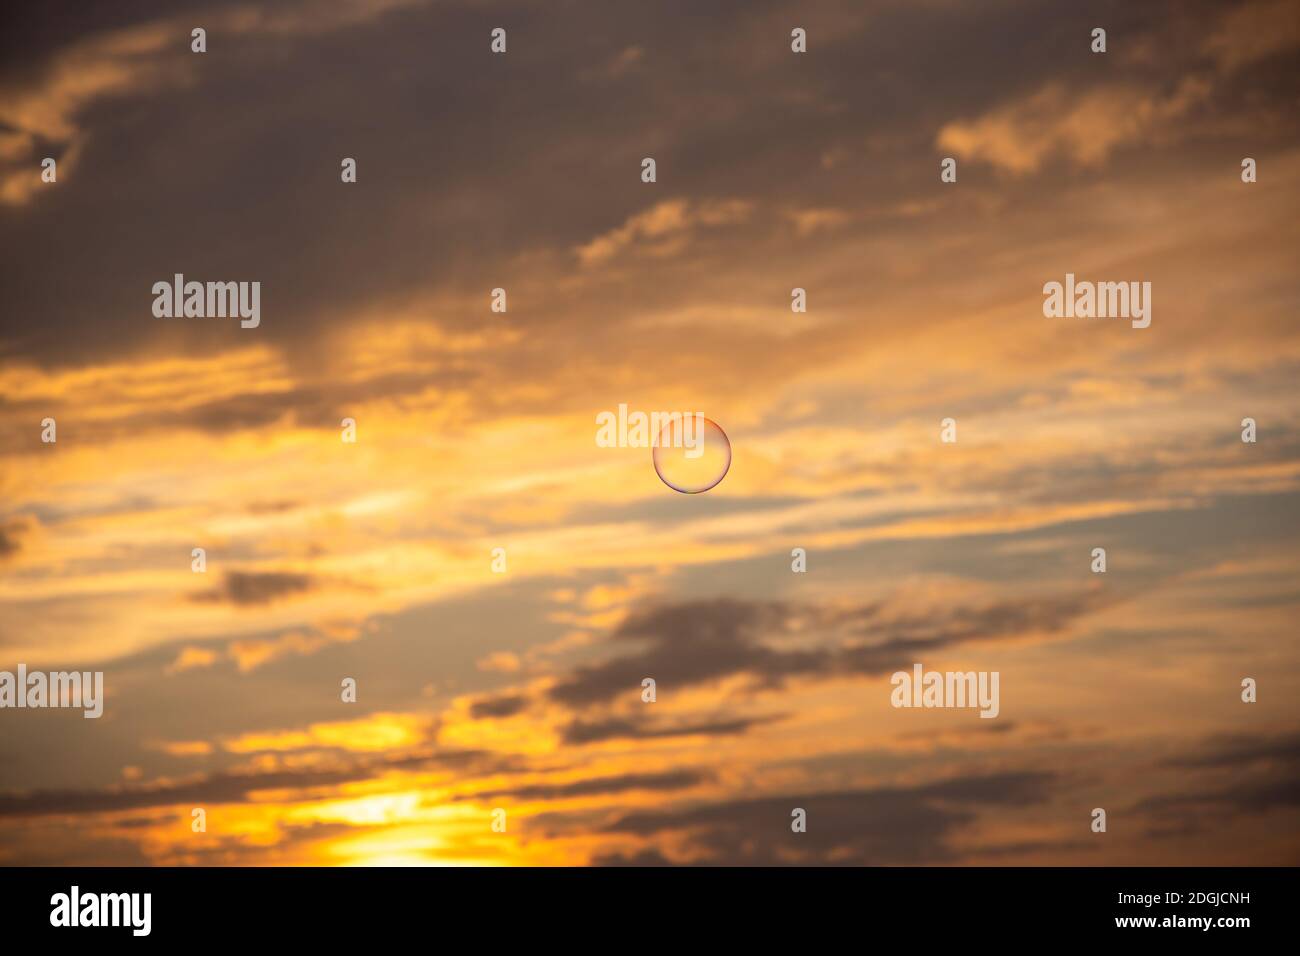 Eine Seifenblase fliegt am dramatisch bewölkten Sonnenuntergang Himmel. Stockfoto